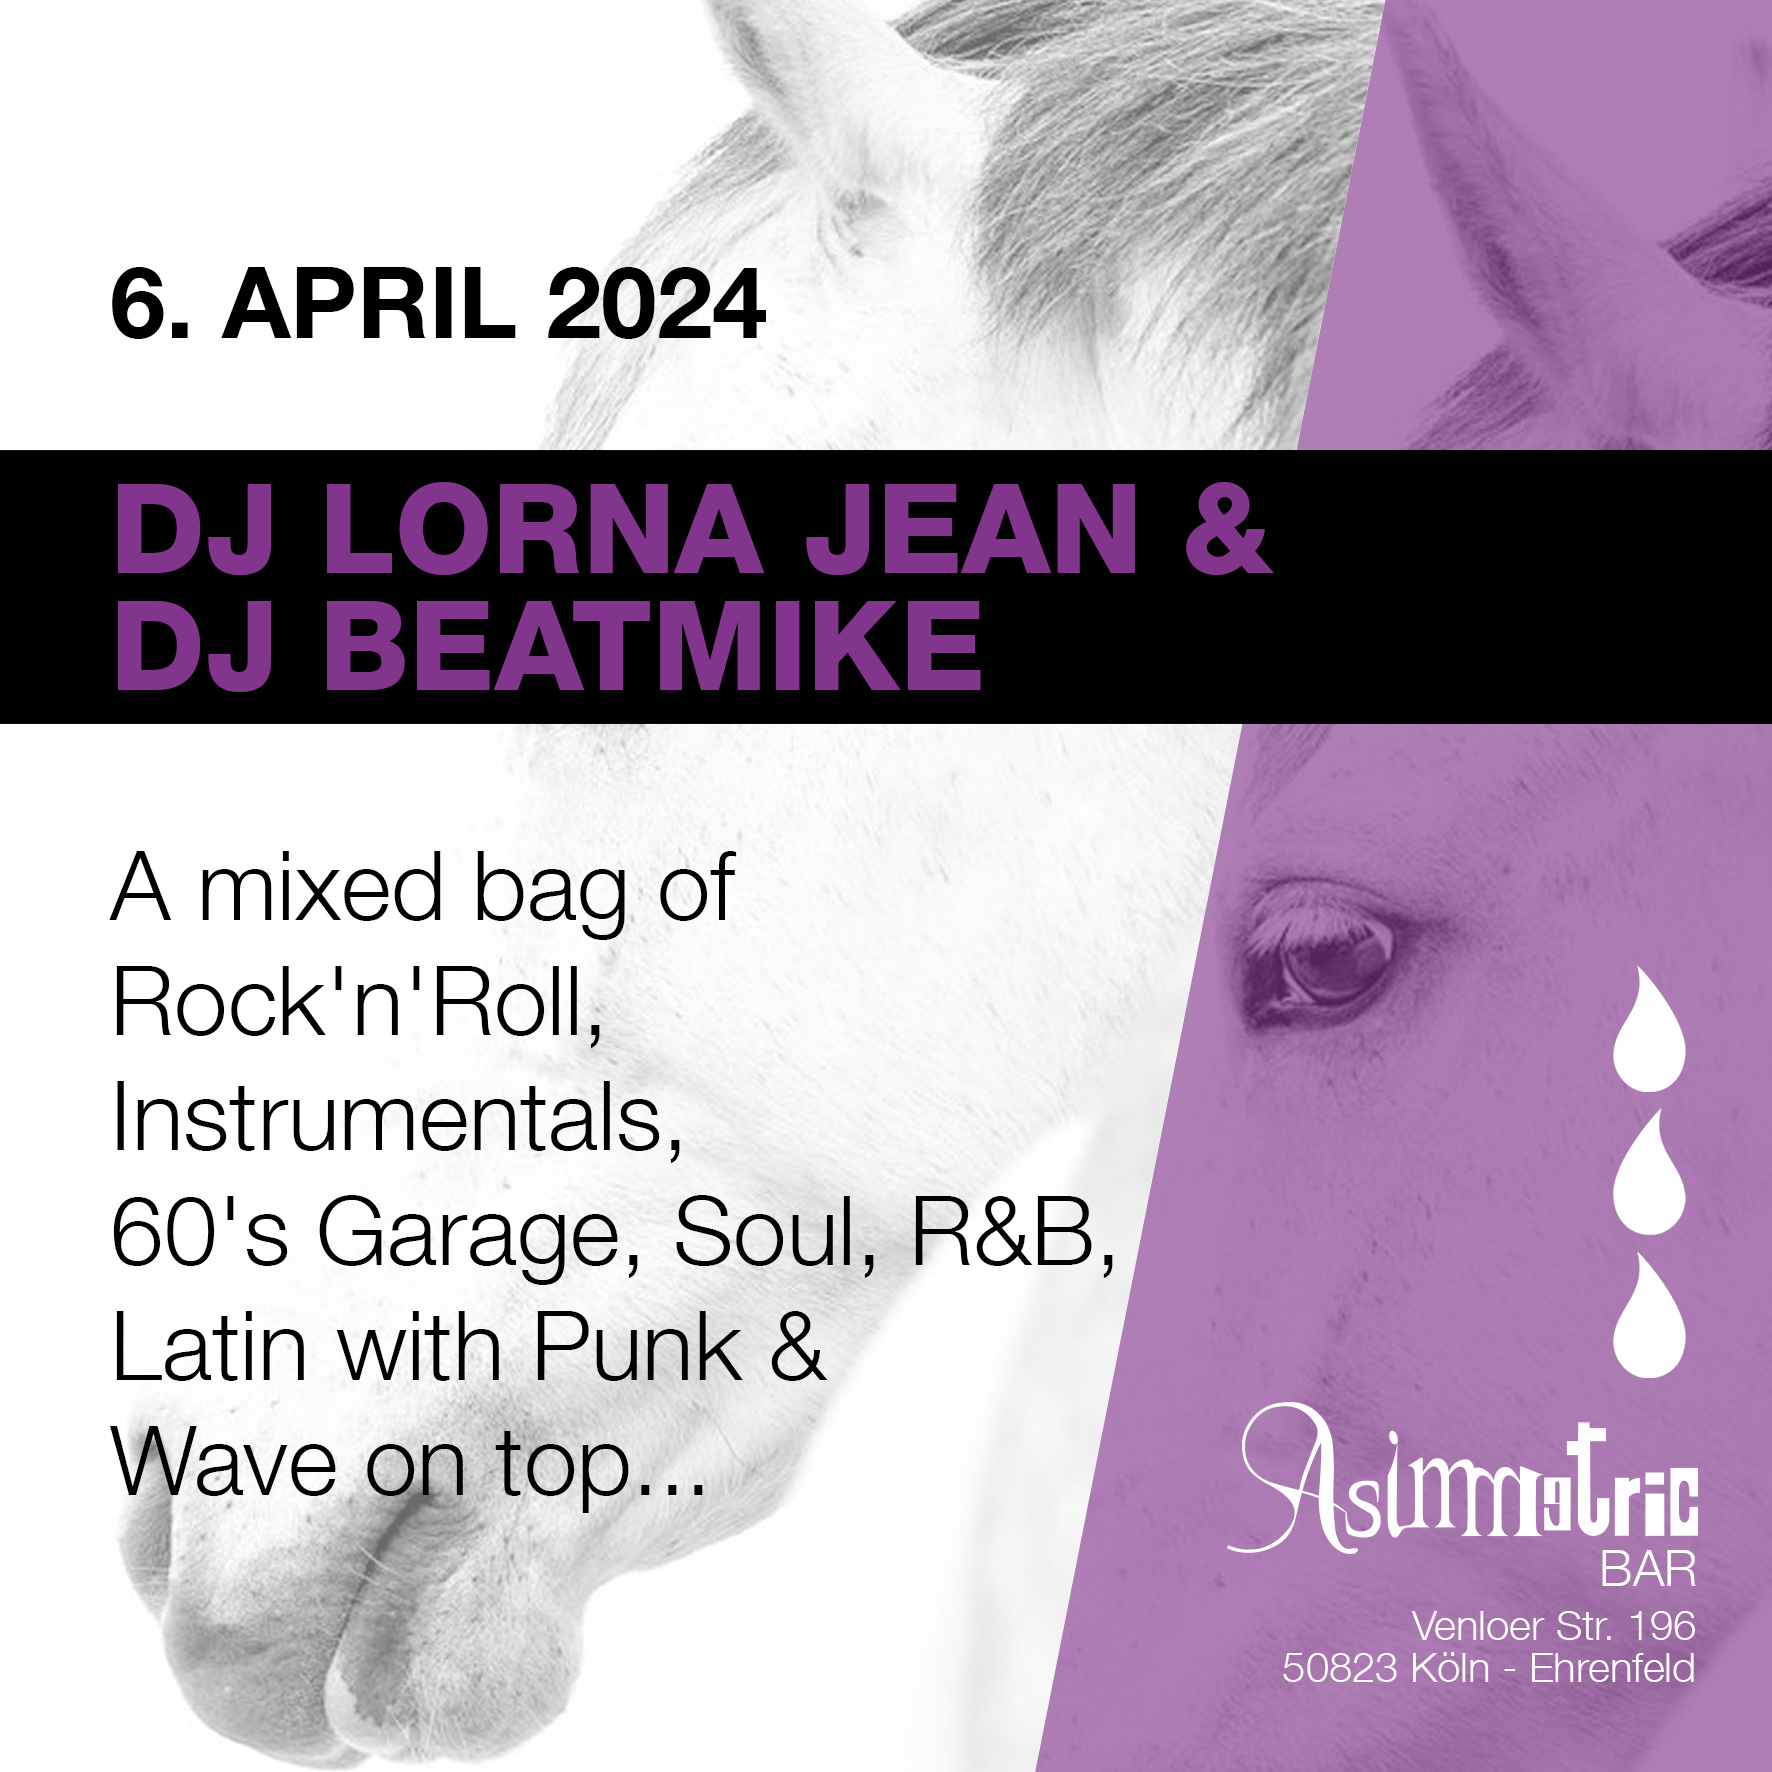 DJ Lorna Jean & Dj Beatmike - Asimmetric Bar - 6.4.2024